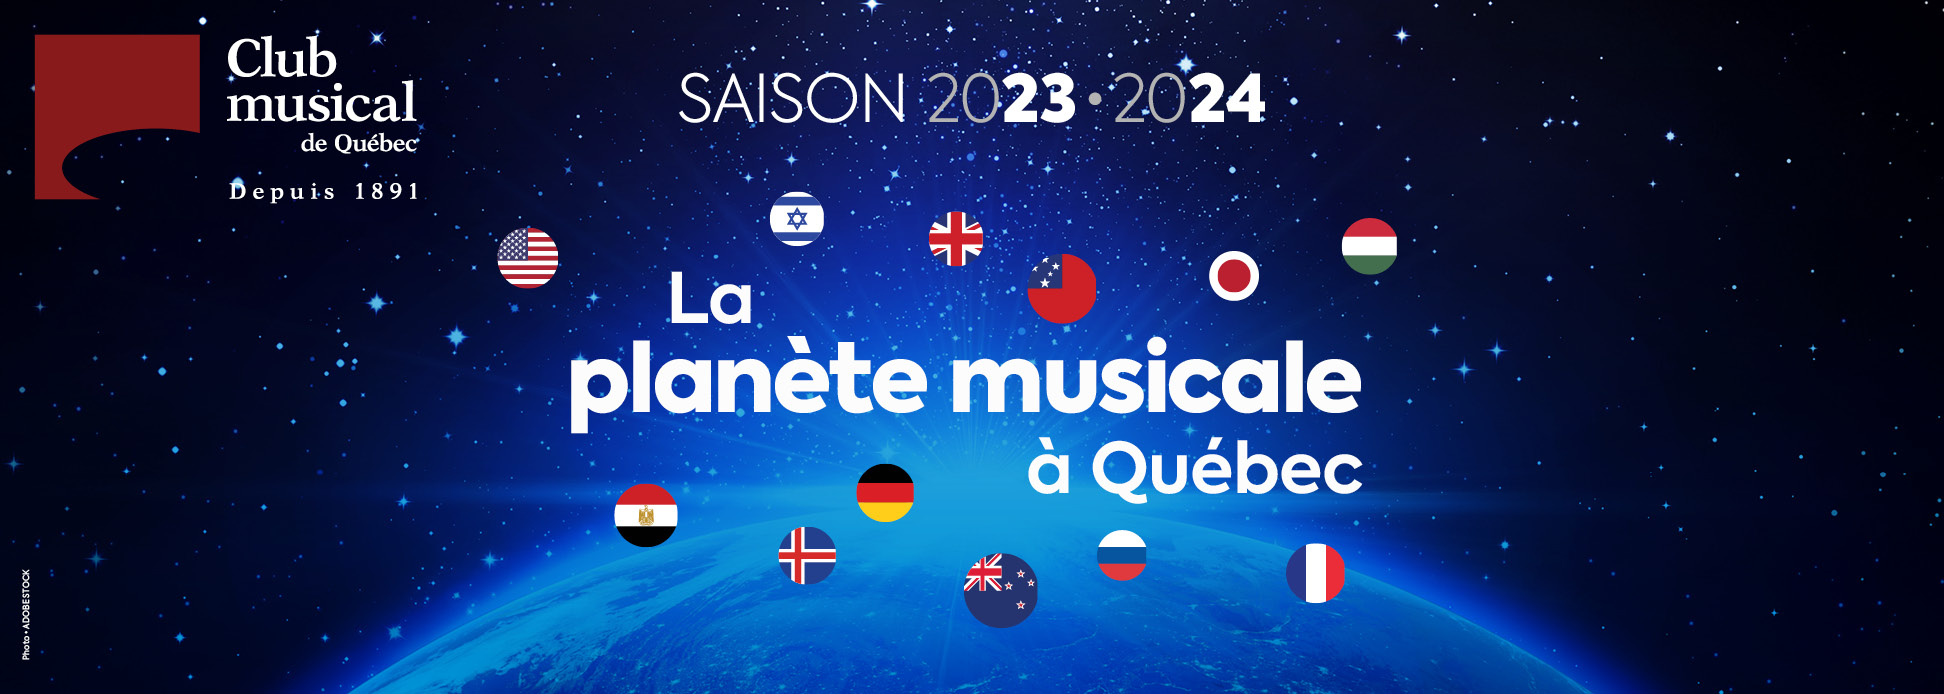 Club musical de Québec Saison 2023 2024